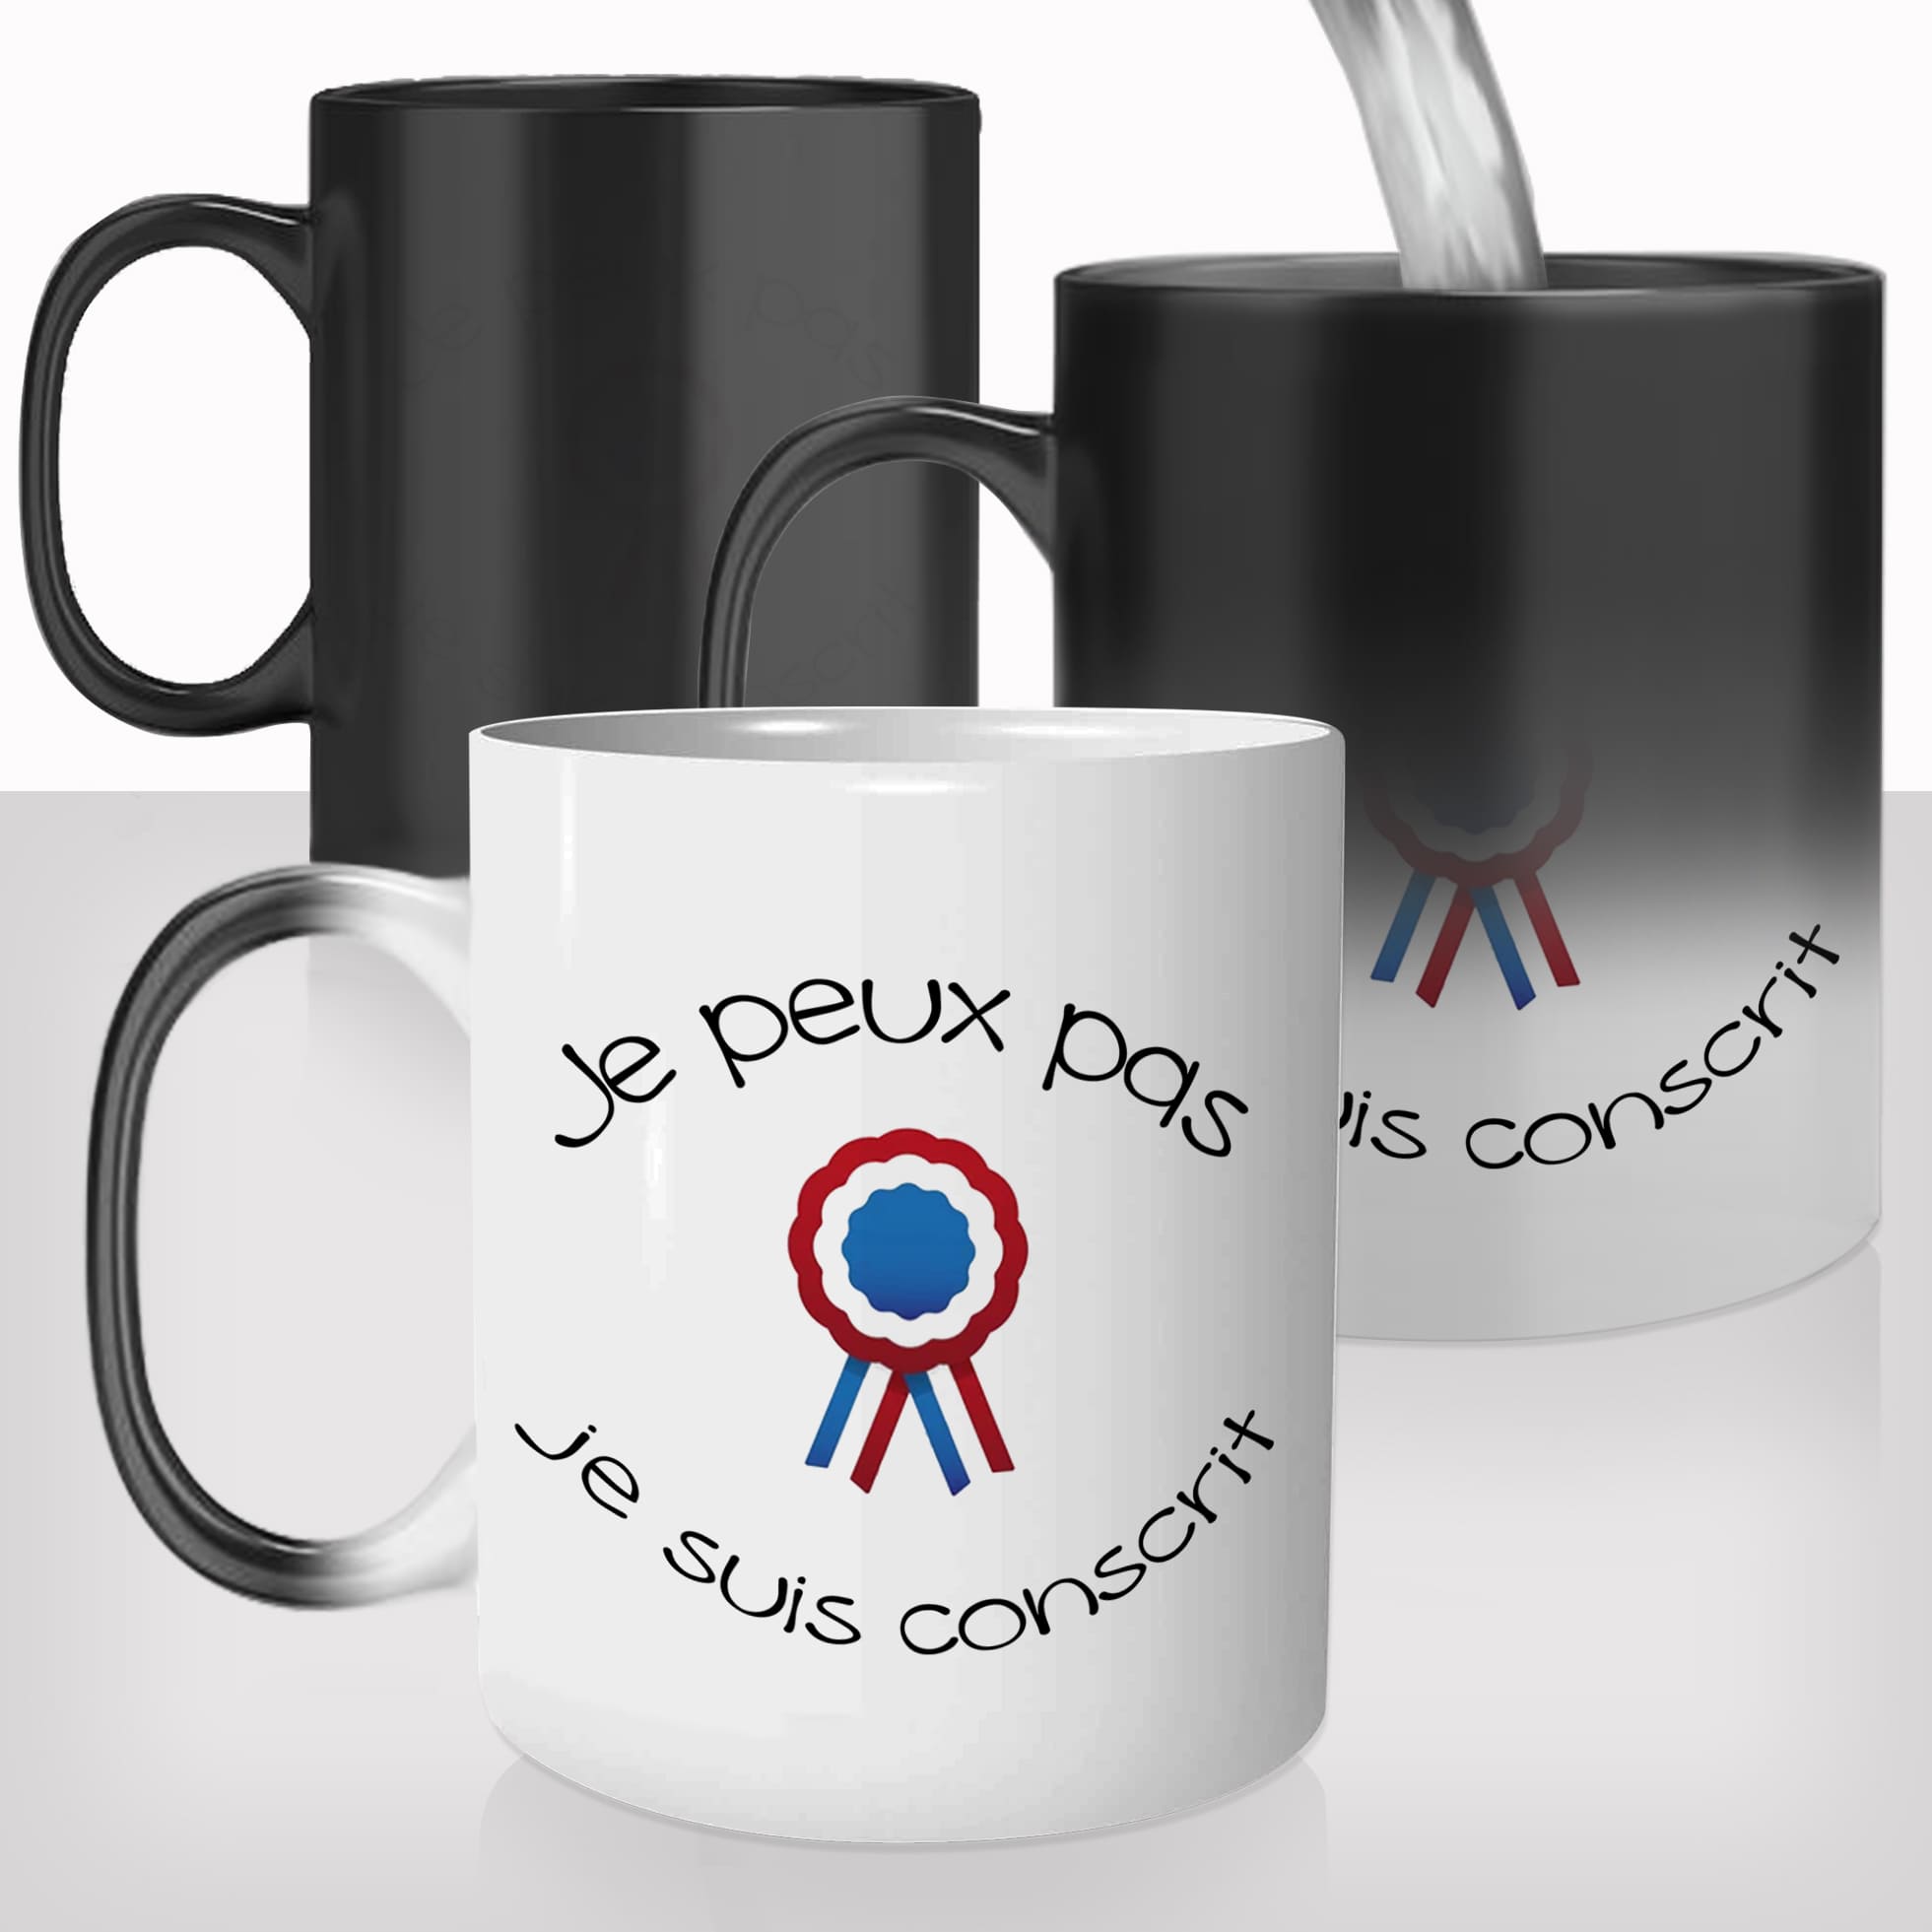 mug-tasse-magique-thermique-thermoreactif-personnalisé-personnalisable-je-peux-pas-conscrit-cocarde-bal-apéro-idée-cadeau-original-café-thé-2